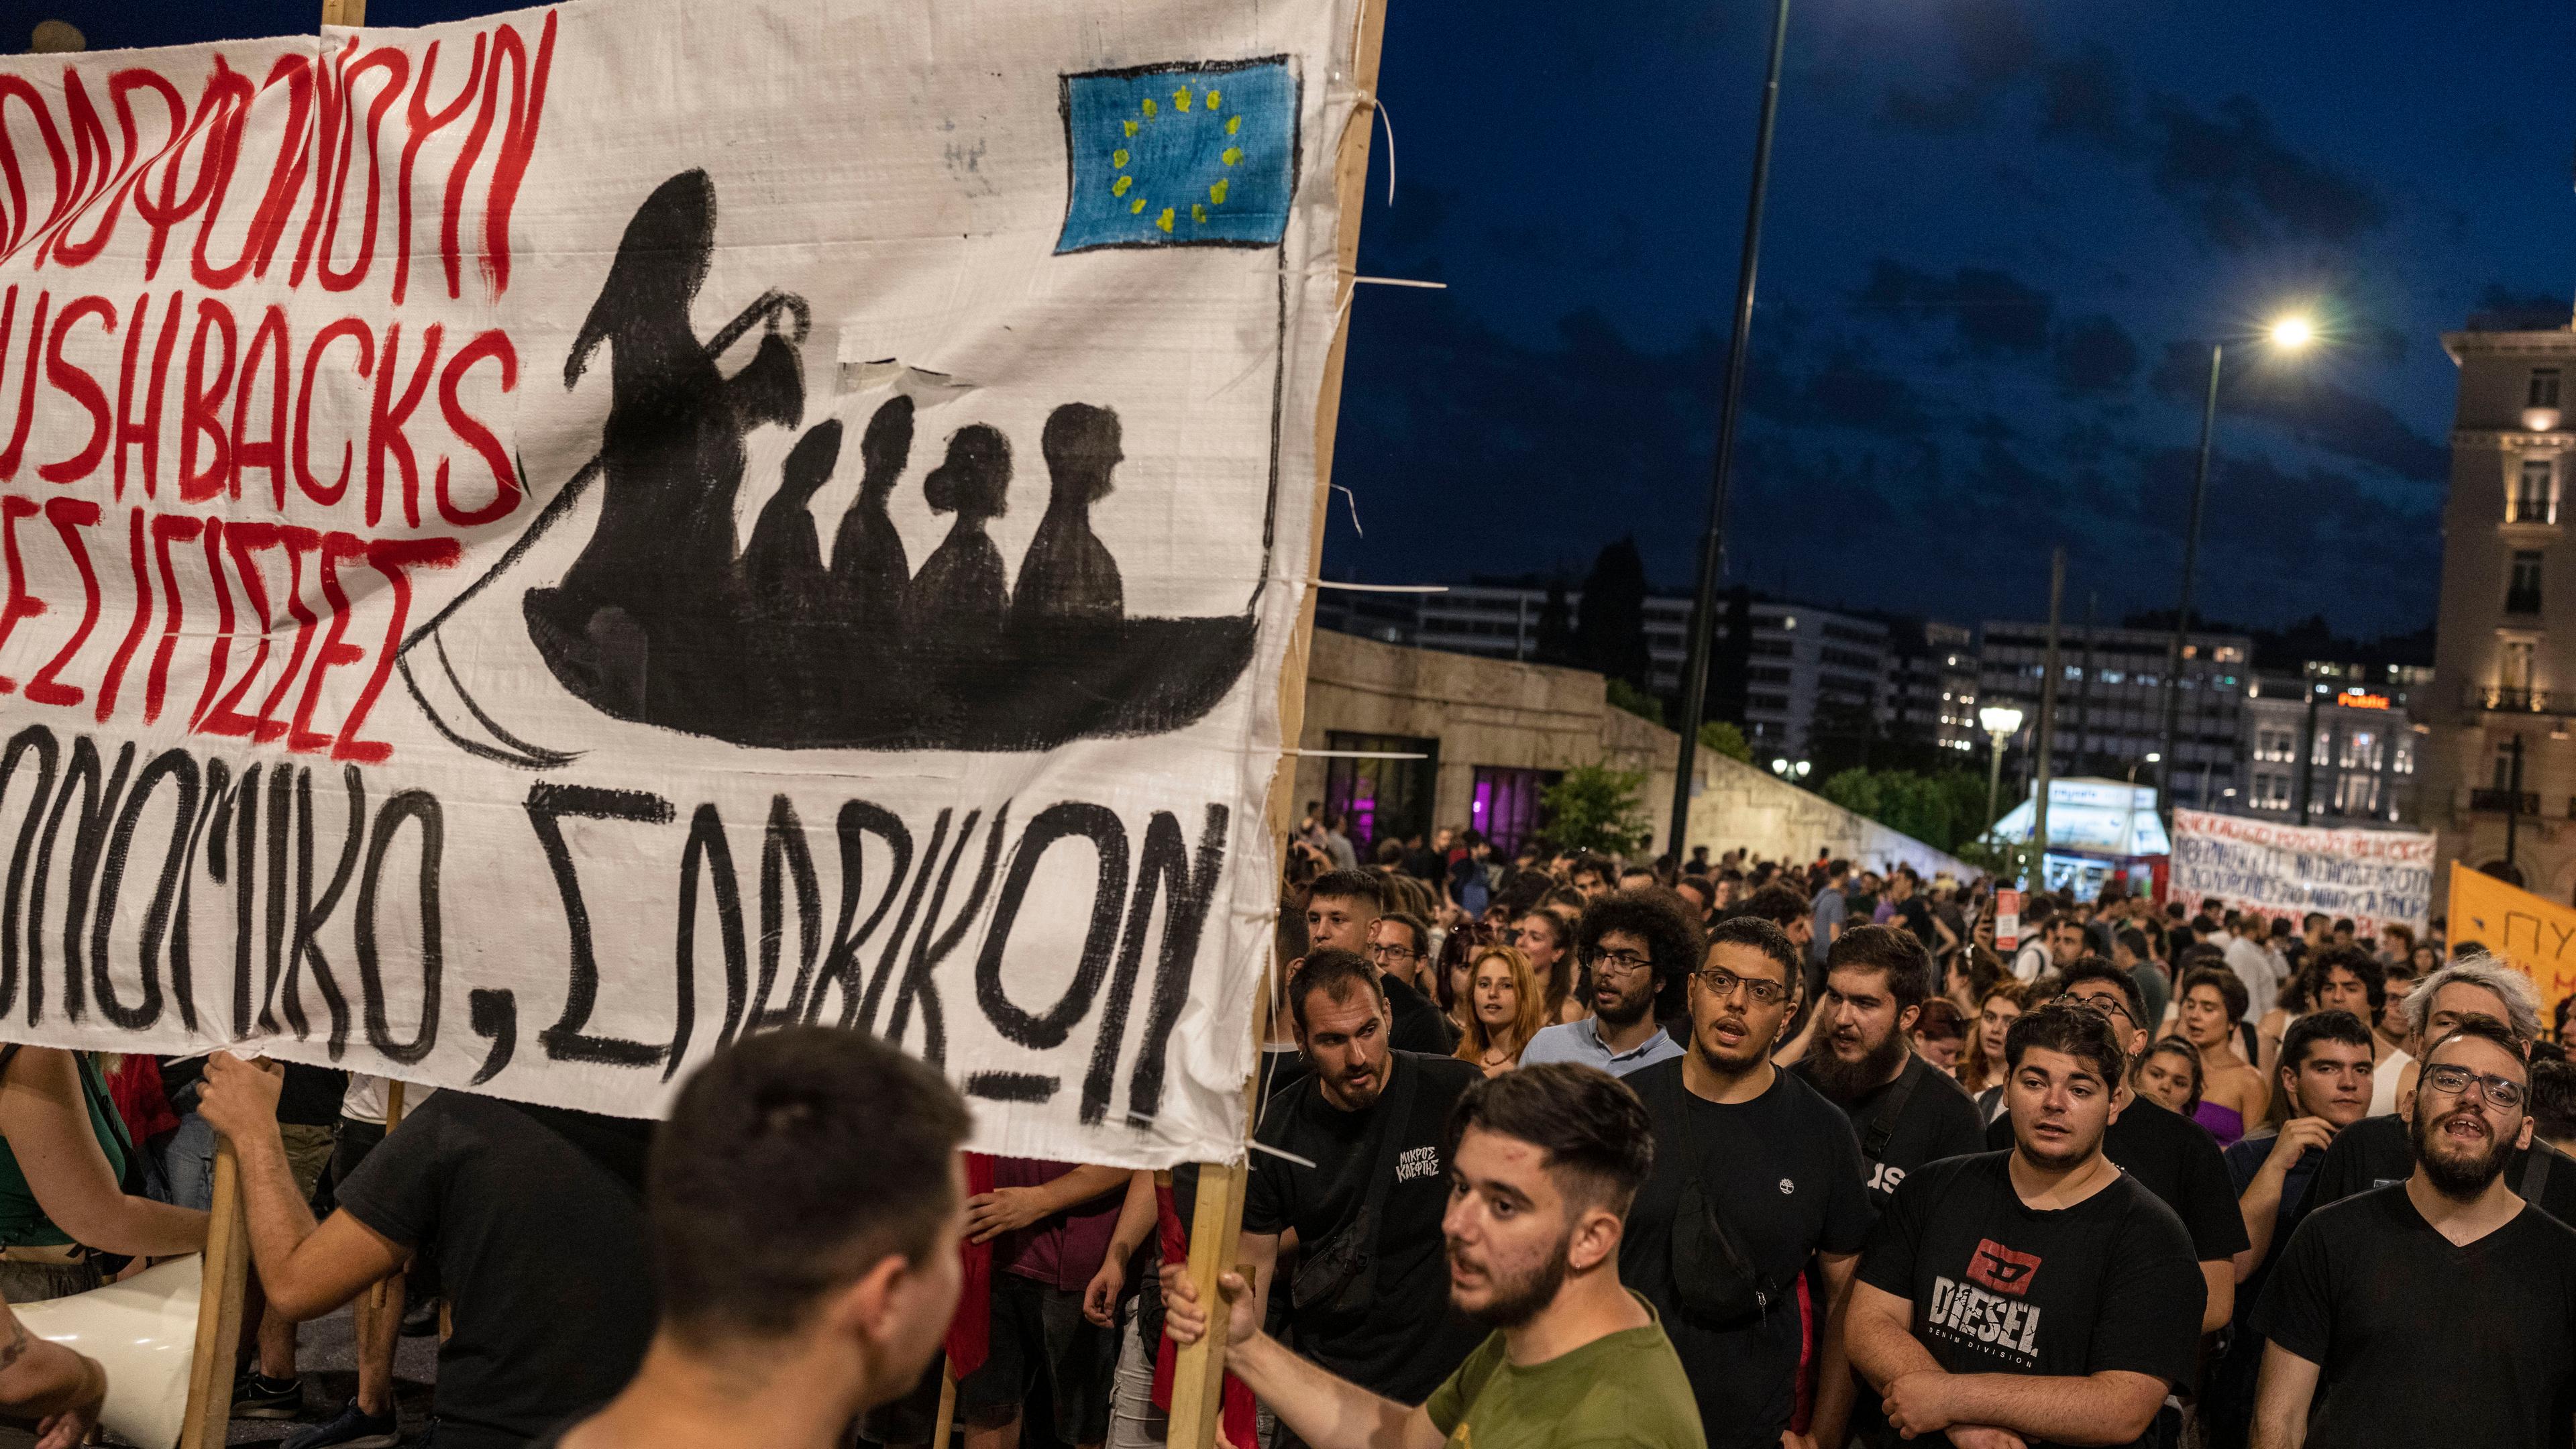 Griechenland, Athen: Demonstranten während einer Demonstration